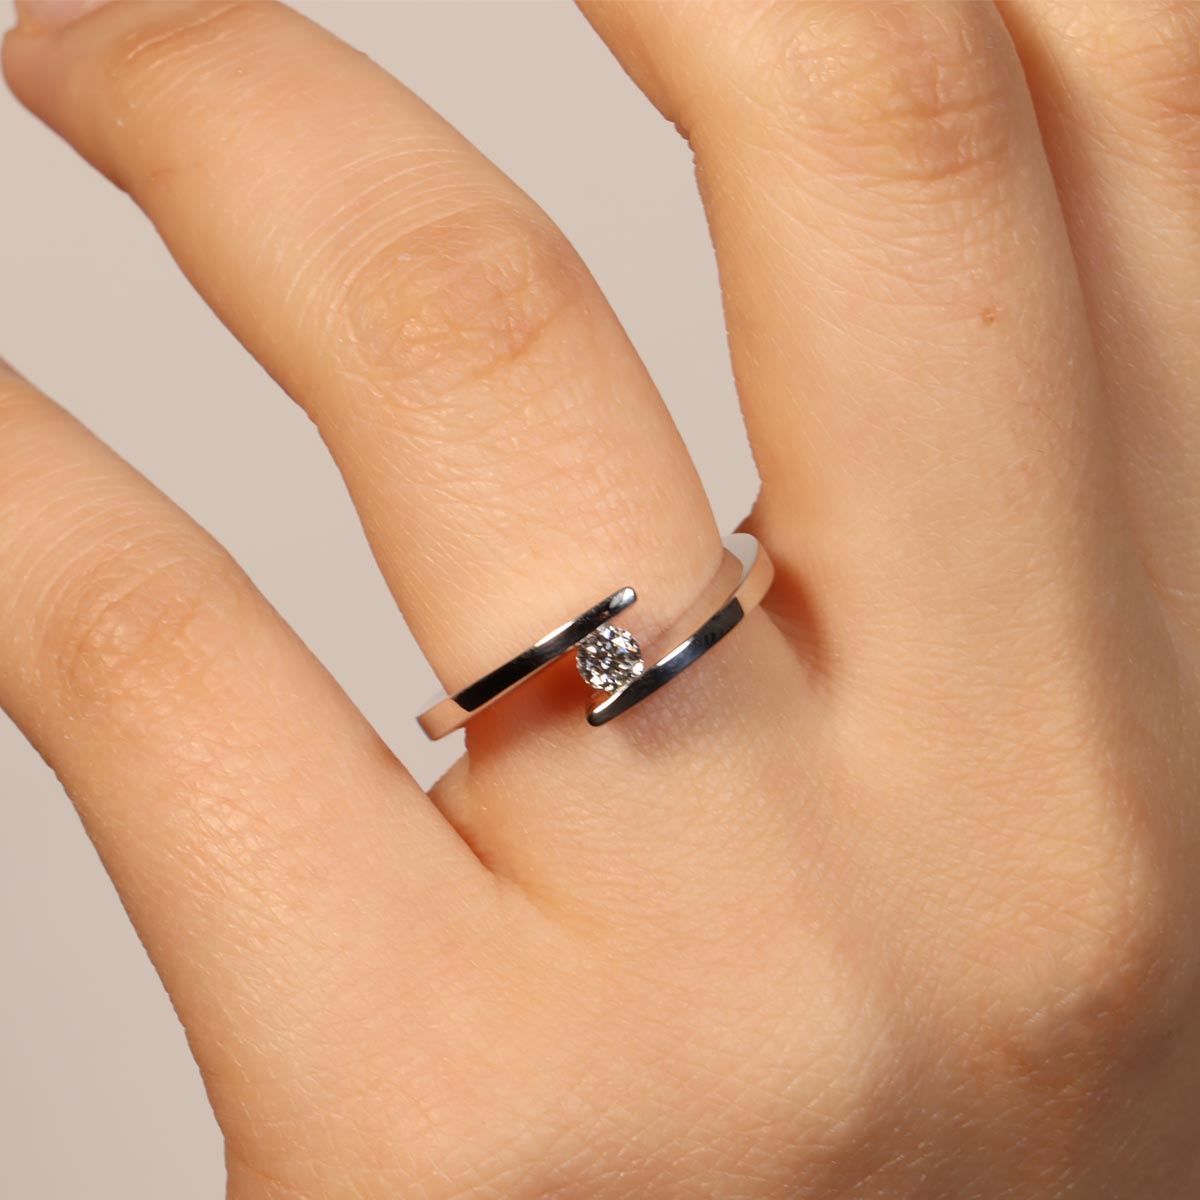 Fabio Ferro White Gold Engagement Ring with 0.17 Carat Brilliant Cut Diamond